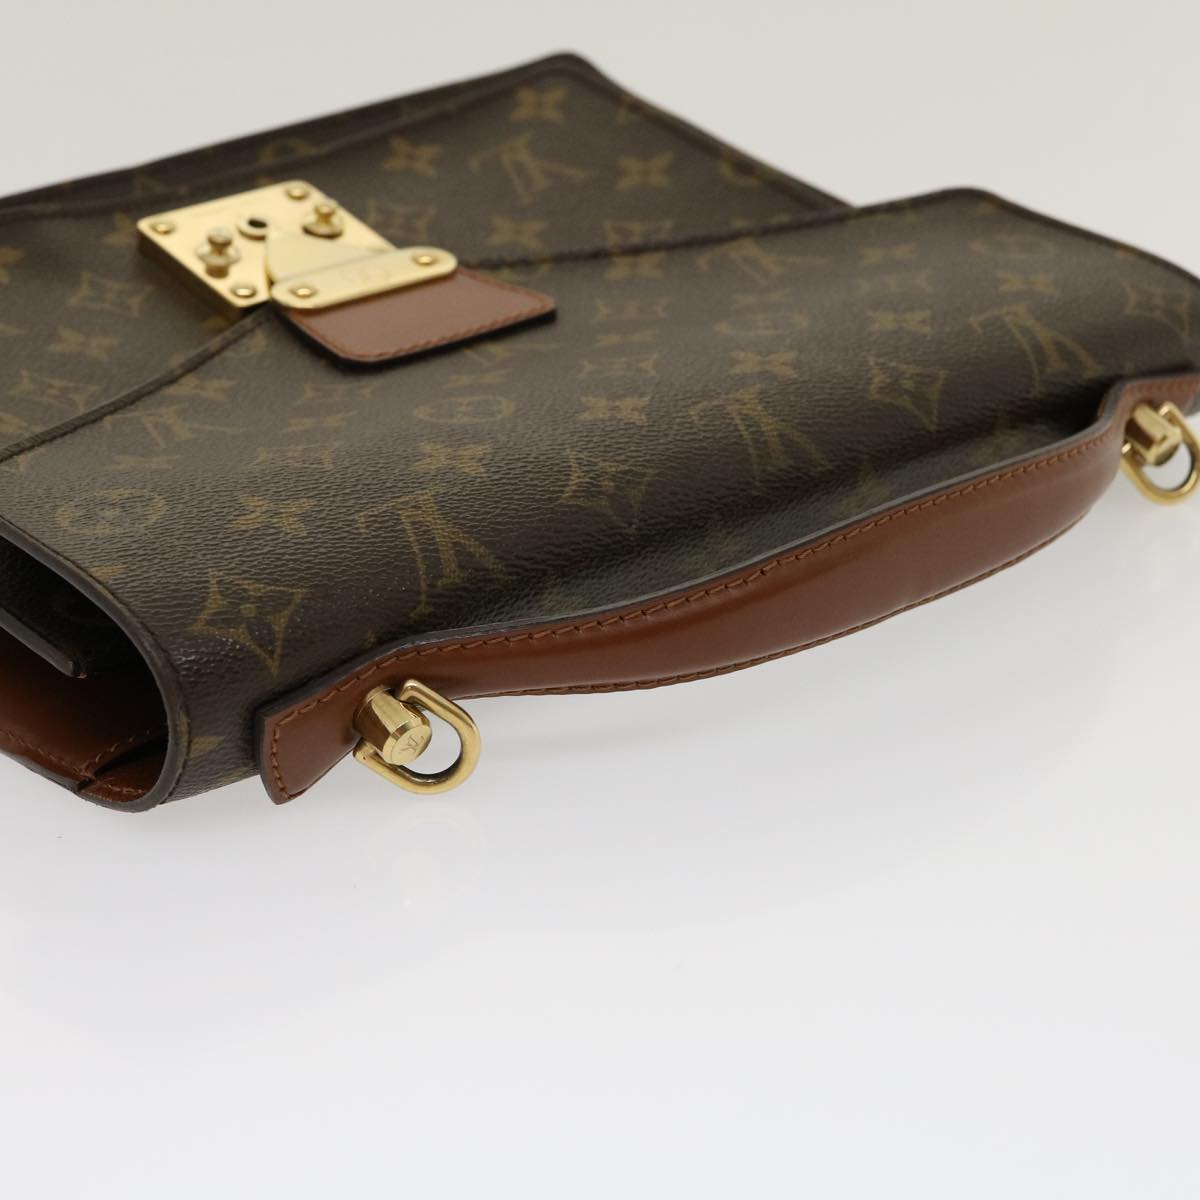 Auth Louis Vuitton Monogram 2way Bag Monceau M51185 Women's Handbag,Shoulder  Bag